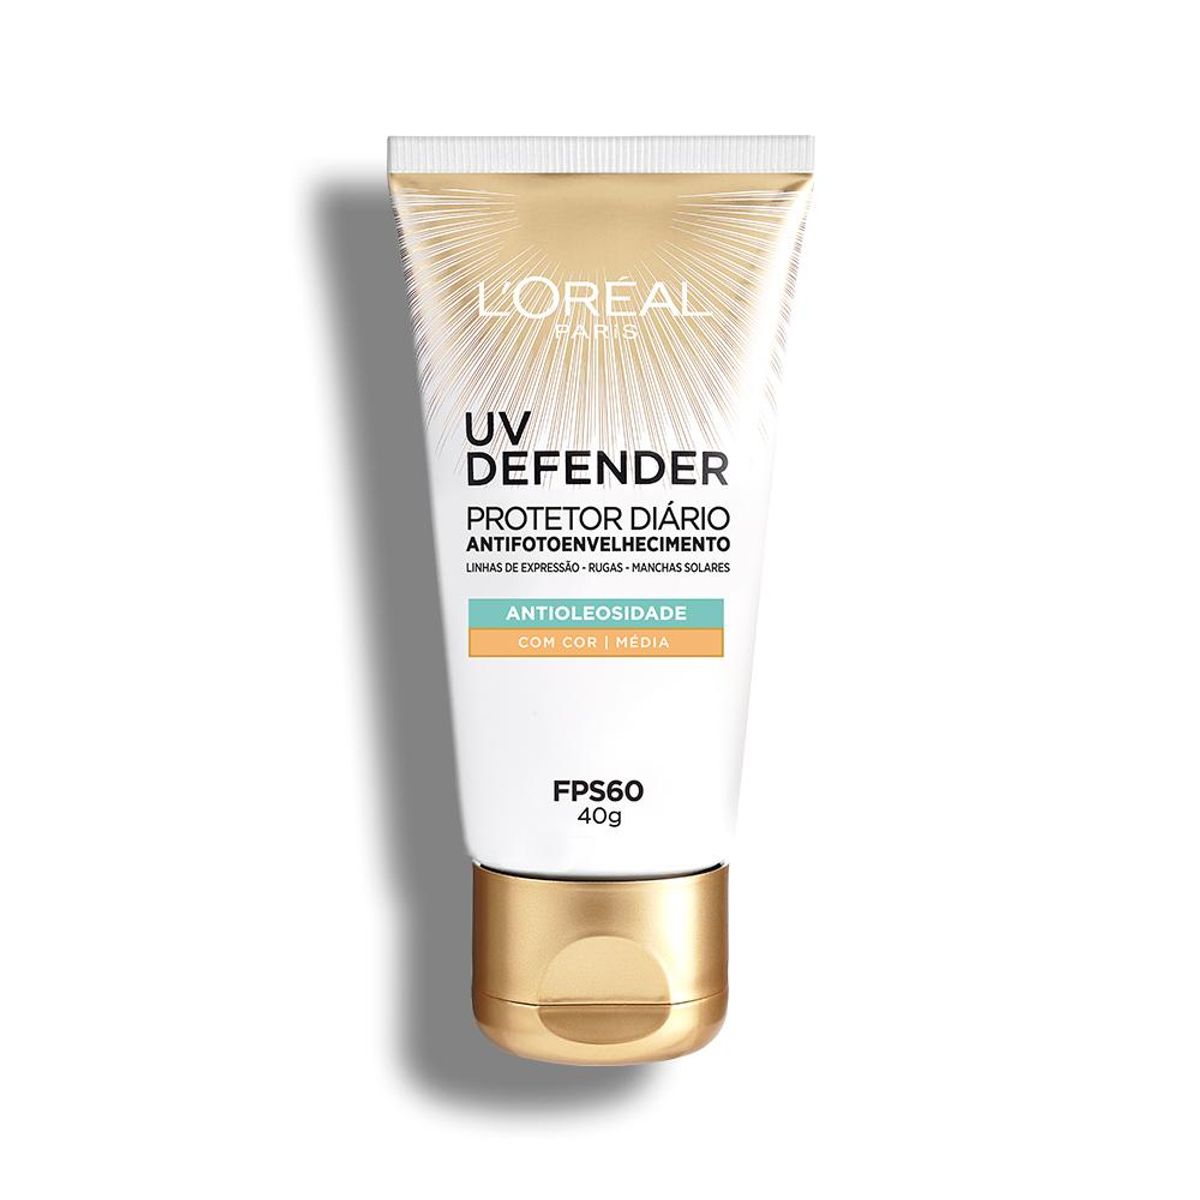 Protetor Solar Facial L'Oréal Paris UV Defender Antioleosidade Cor Média FPS 60, 40g